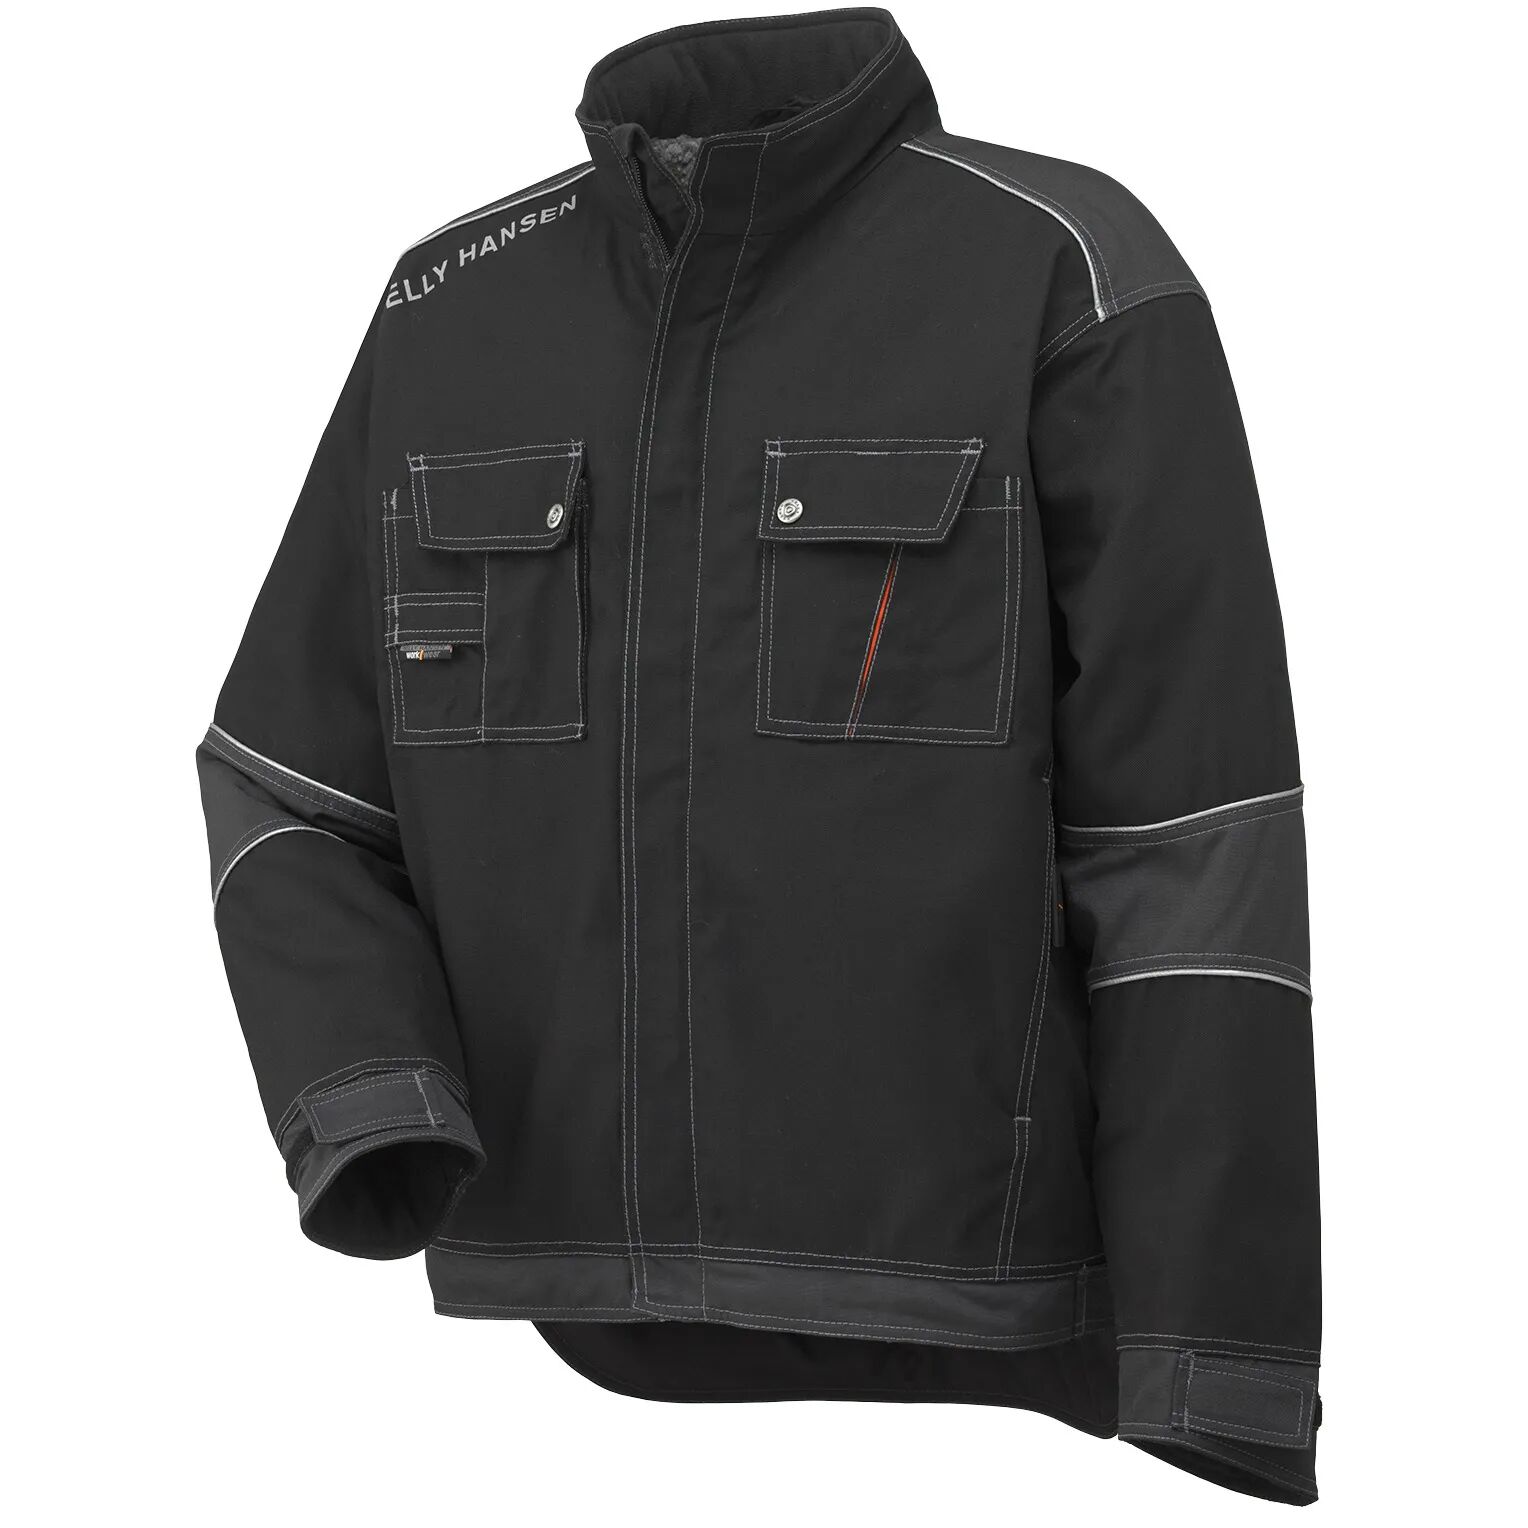 HH Workwear Helly Hansen WorkwearChelsea Insulated Winter Work Jacket Black L